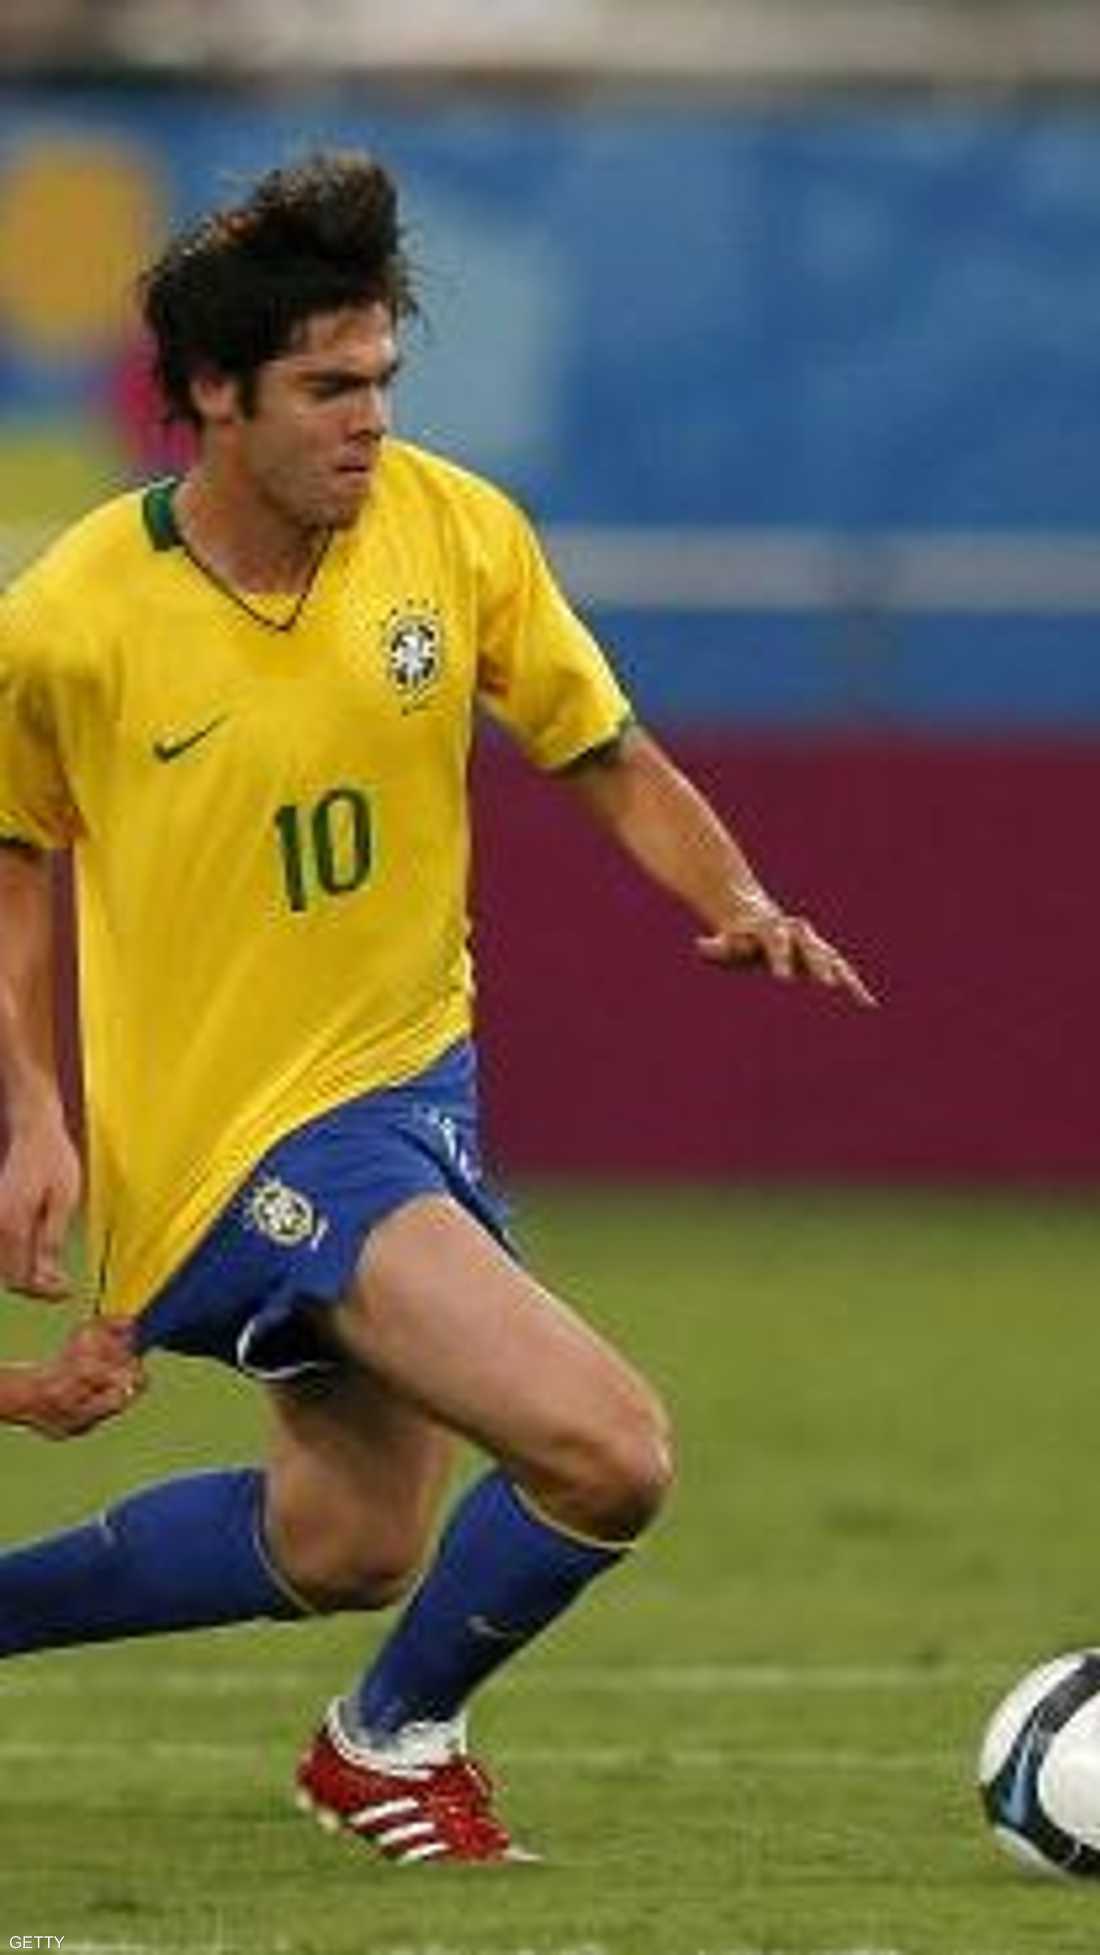 اللاعب البرازيلي عرف بمهارته في شن الهجمات على أرض الملعب